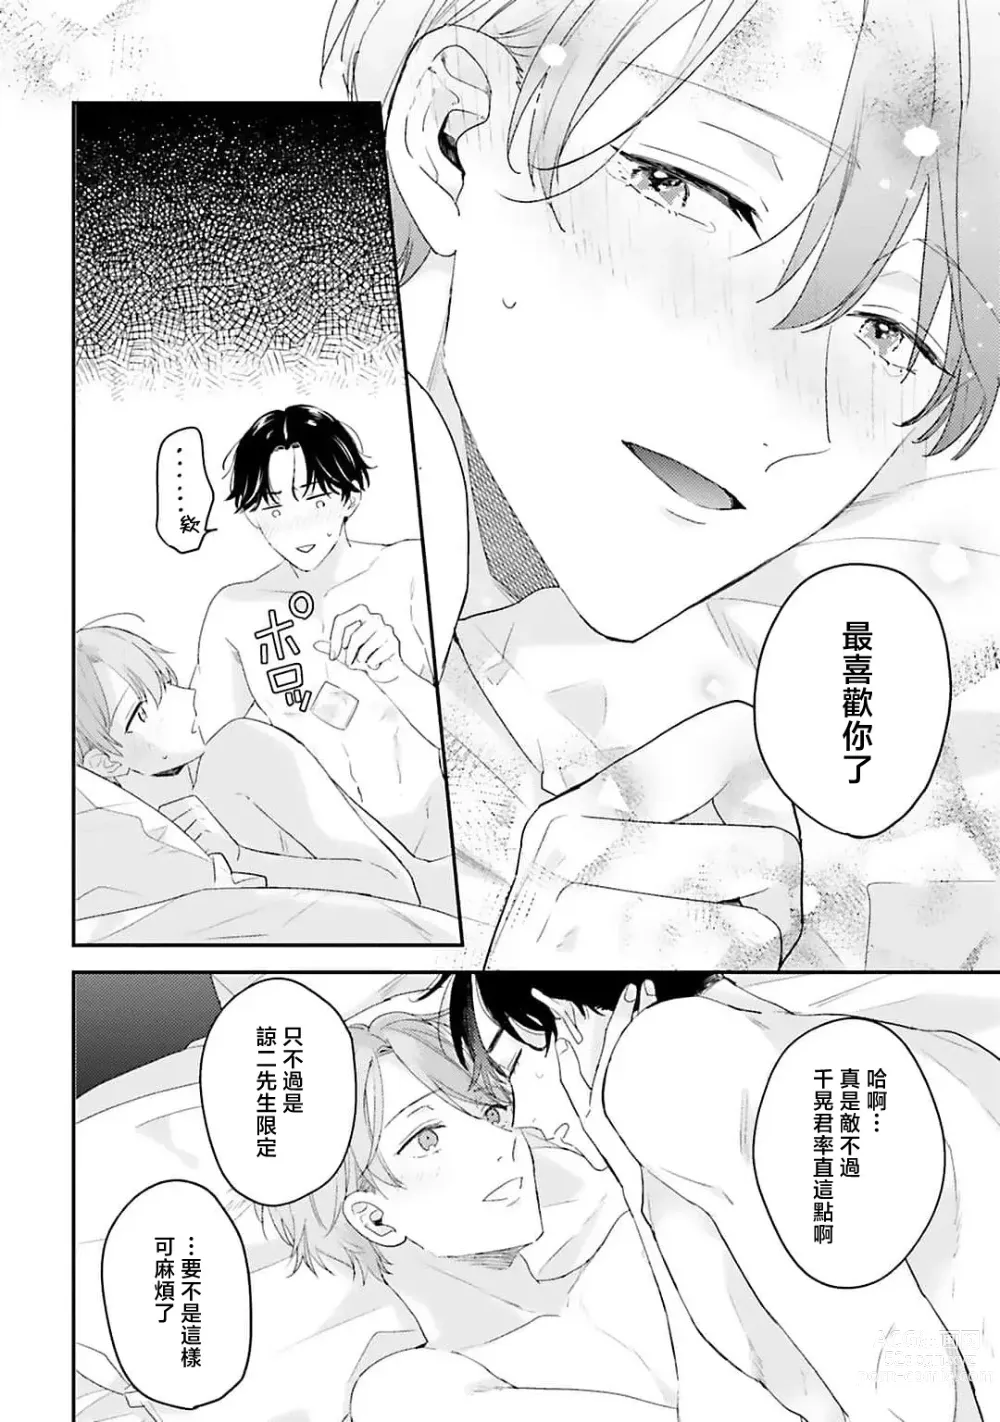 Page 158 of manga 绽放的恋爱皆为醉与甜1-5